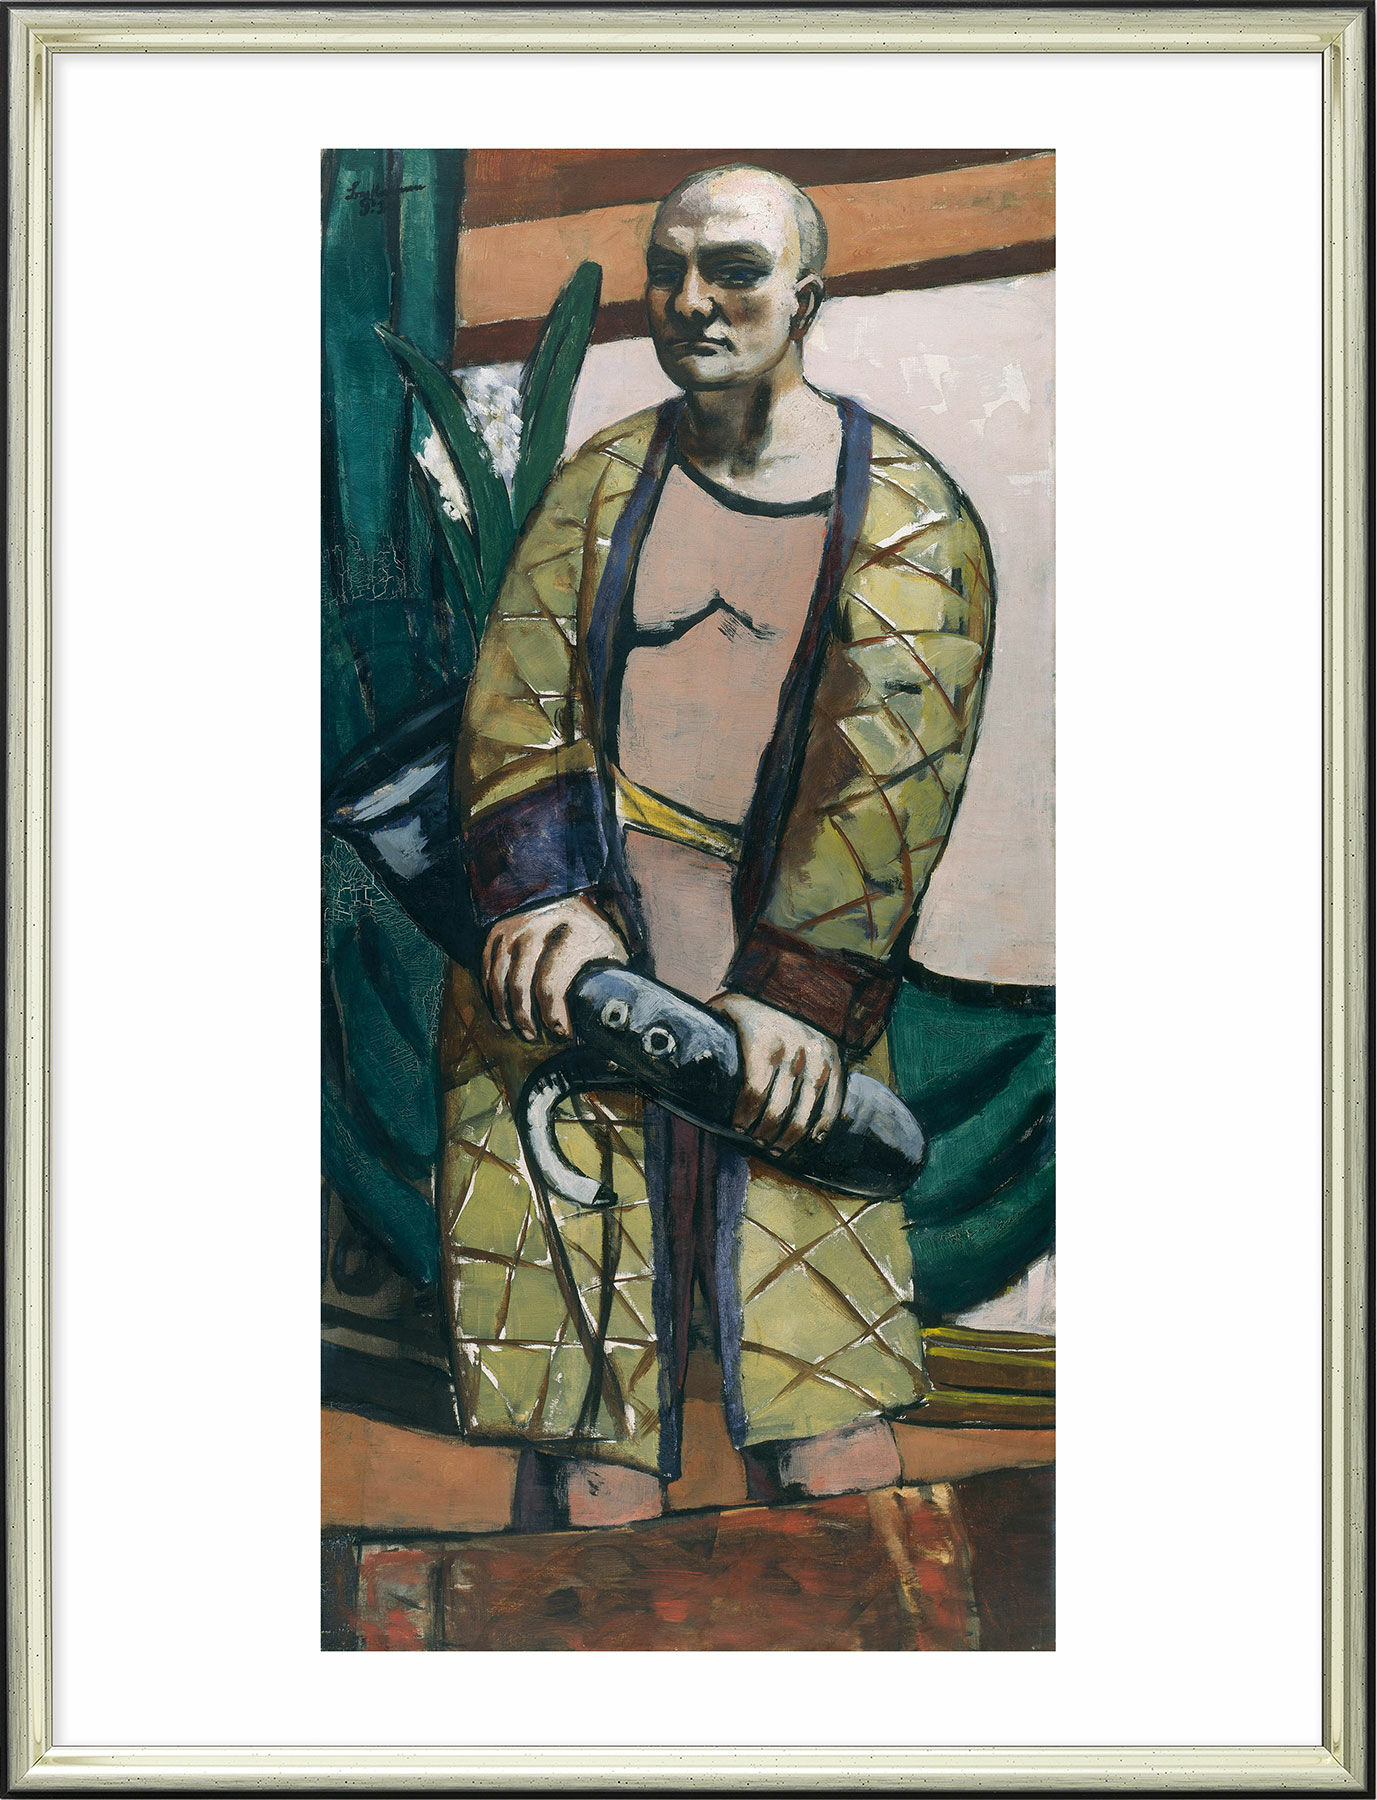 Tableau "Autoportrait au saxophone" (1930), encadré von Max Beckmann